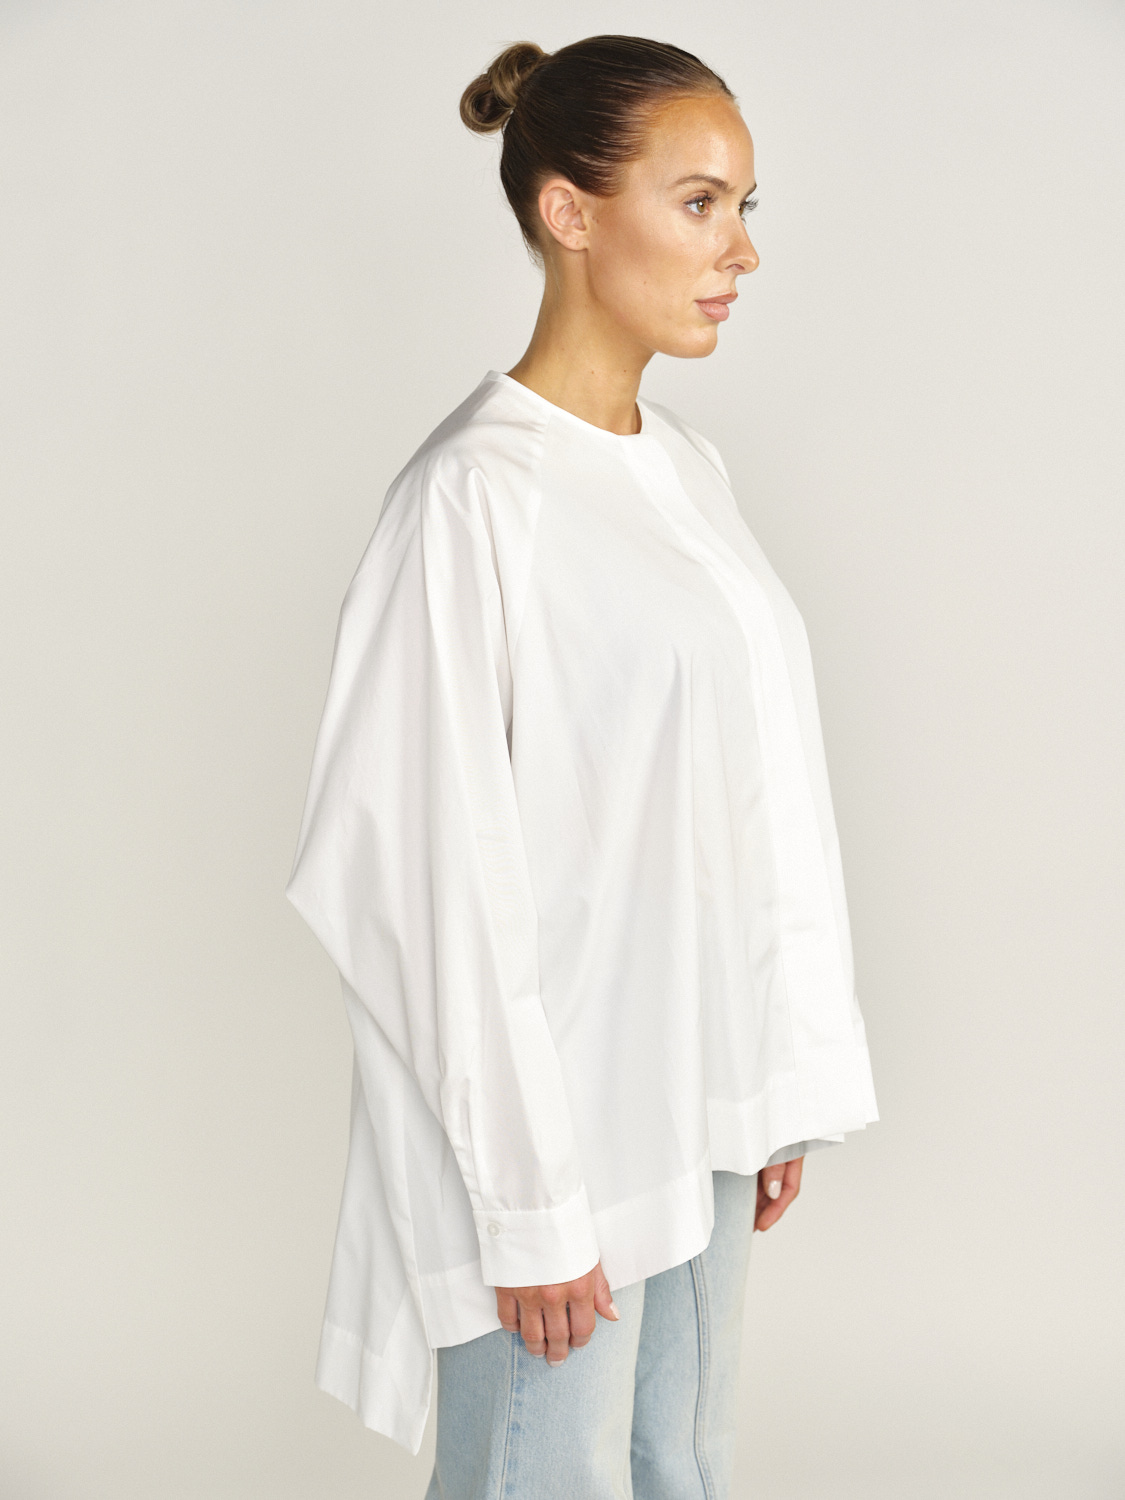 Eva Mann Blusa oversize de corte recto confeccionada en algodón blanco 34